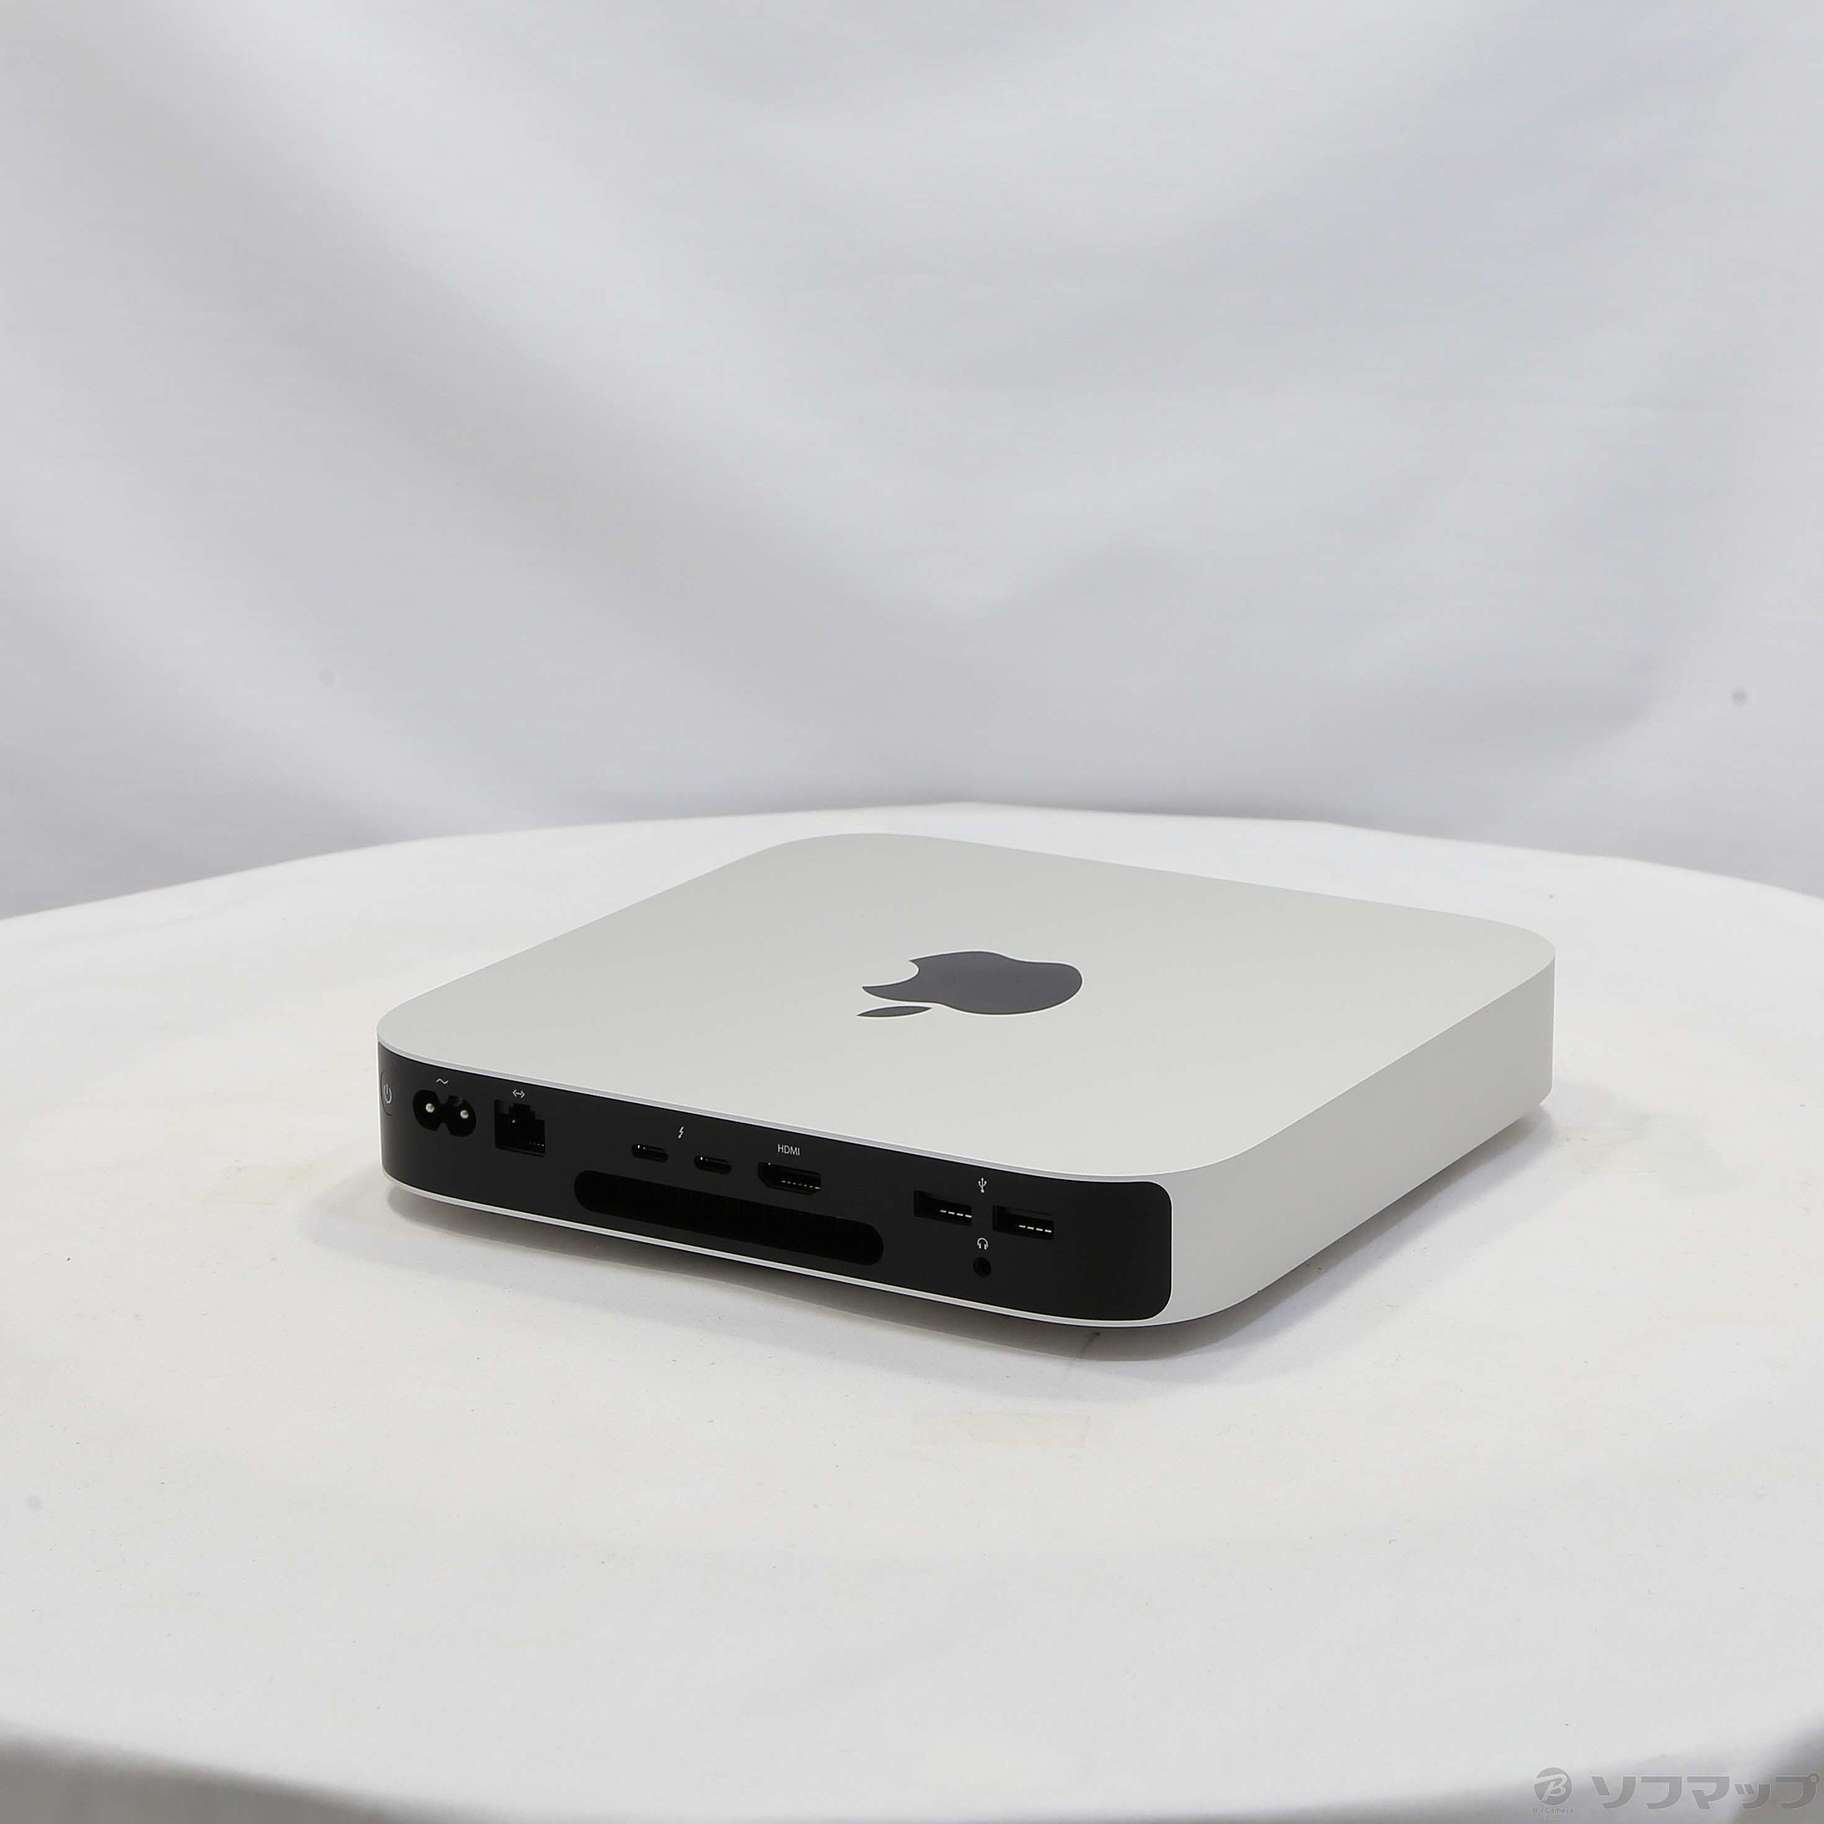 Mac mini （8コアCPU・8コアGPU・Apple M1チップ） - Macデスクトップ